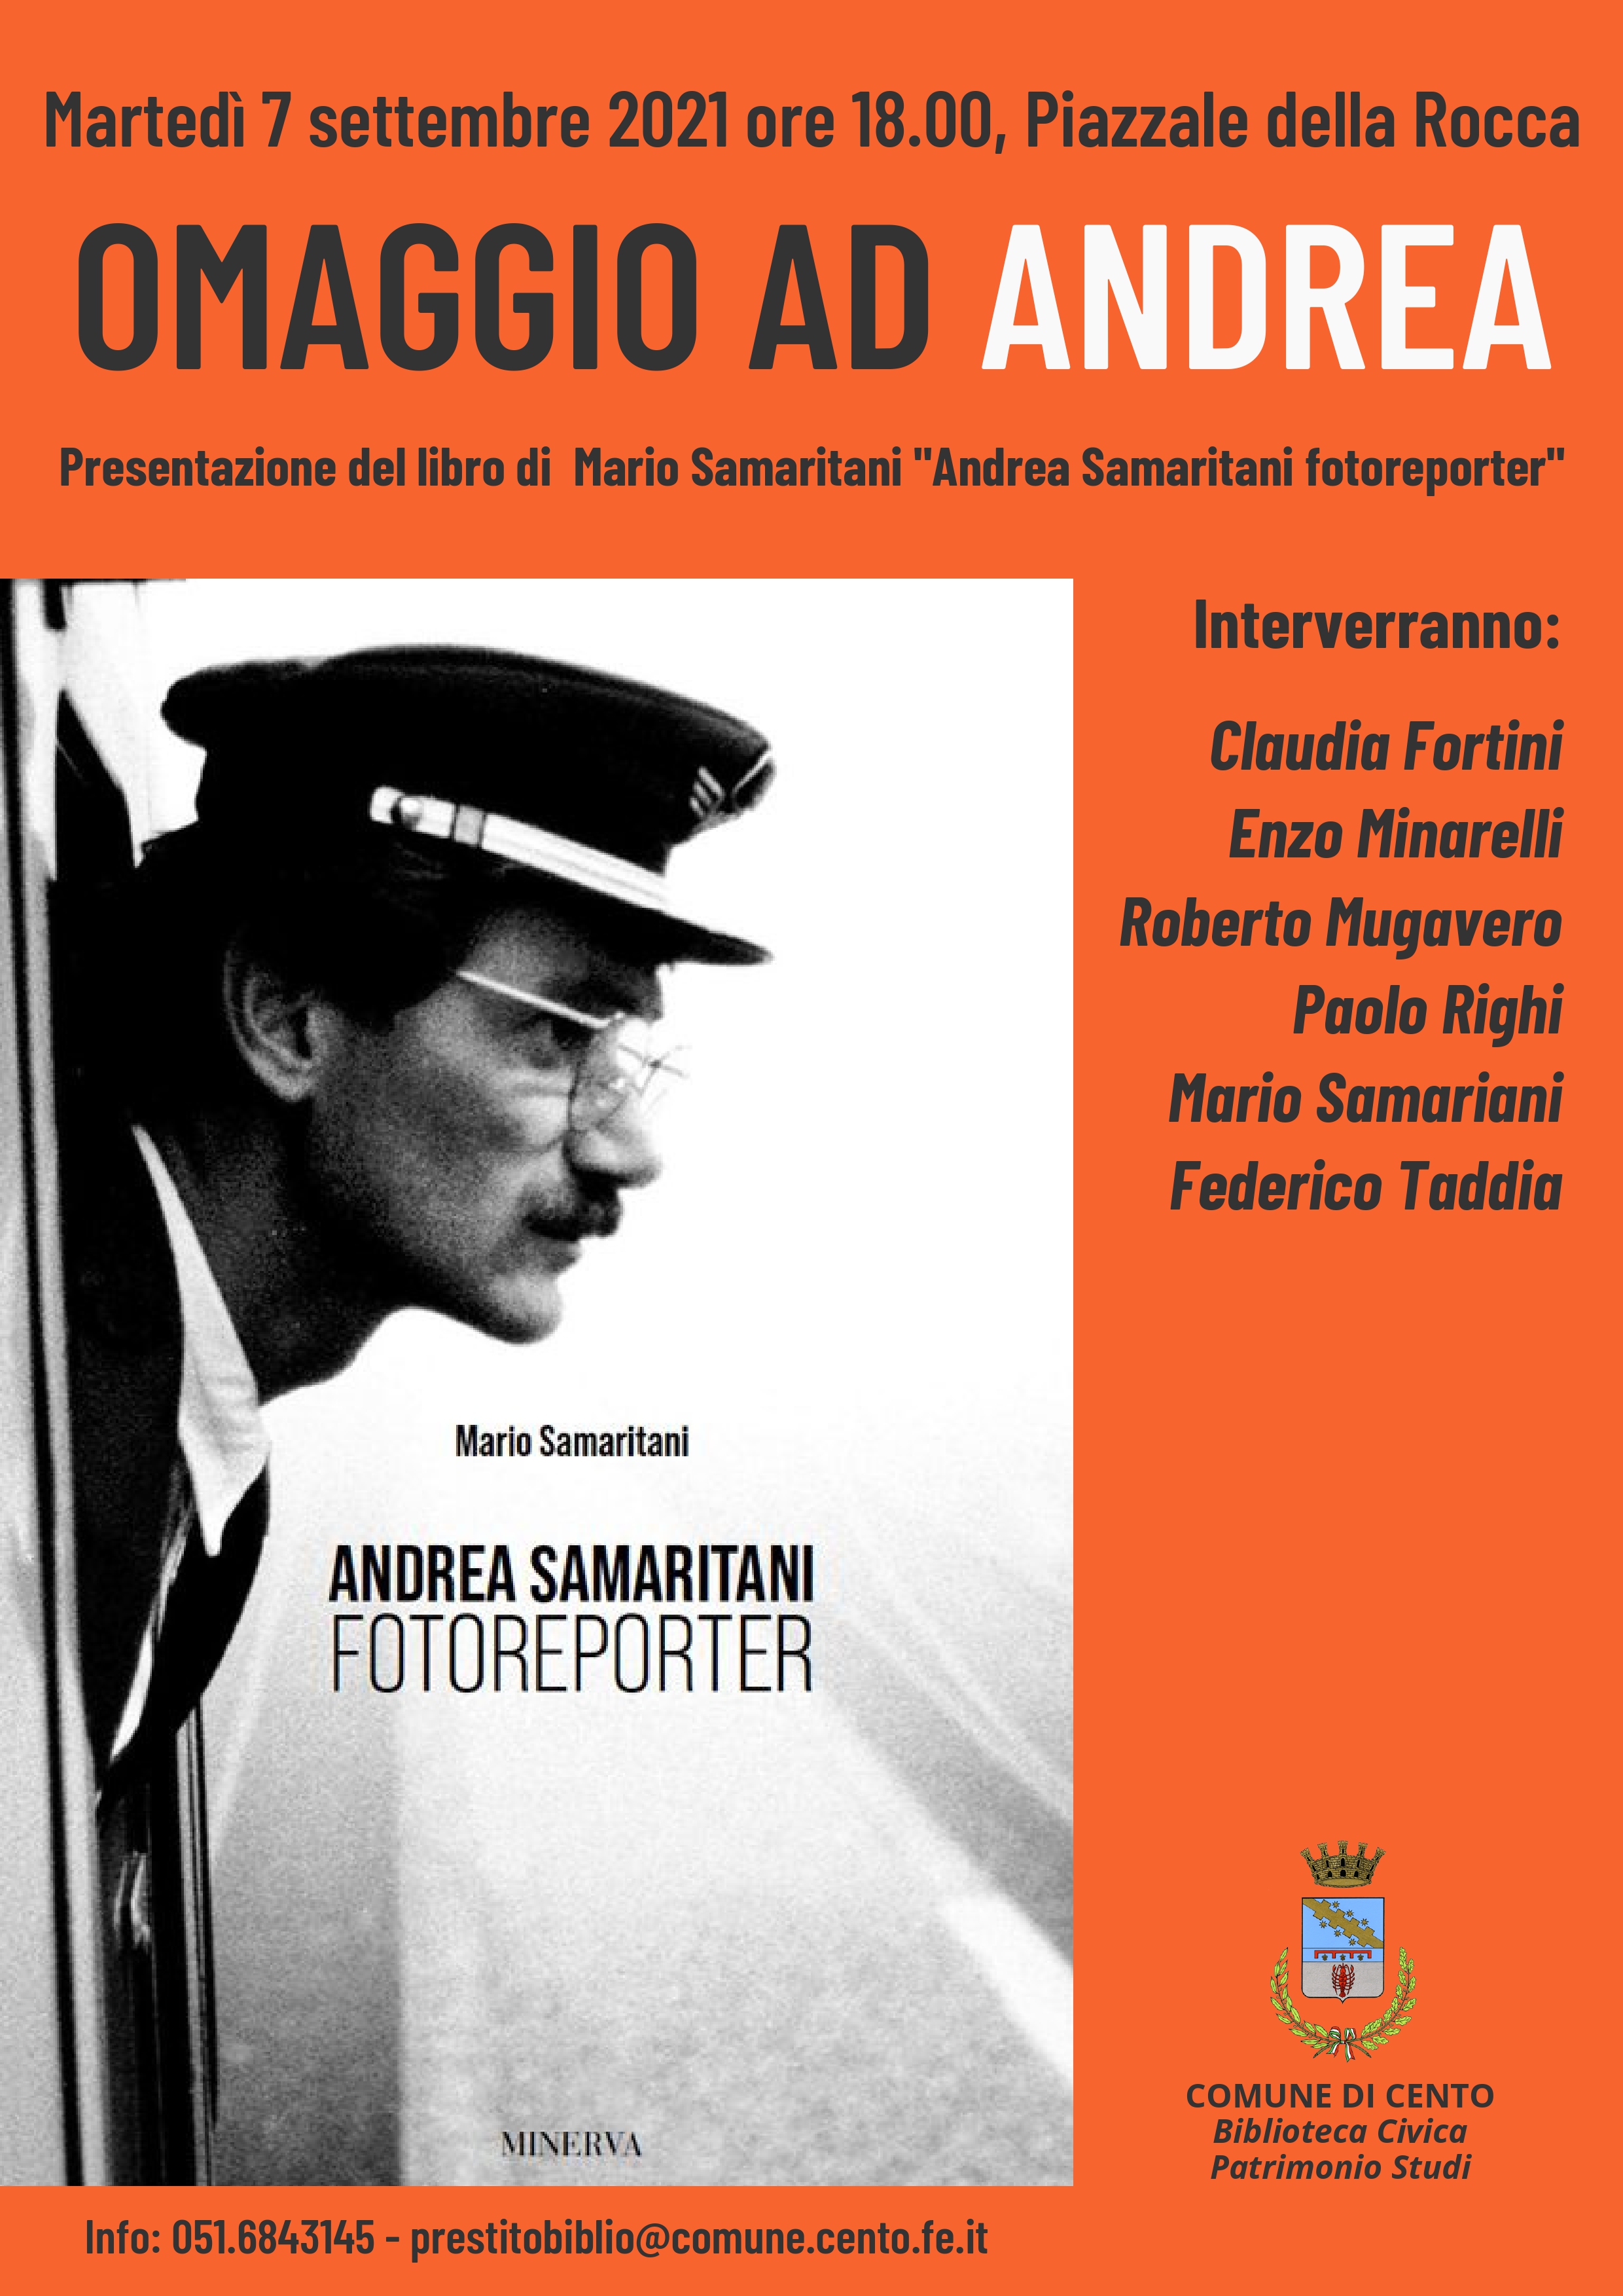 locandina evento con profilo fotoreporter Andrea Samaritani immagine di copertina volume